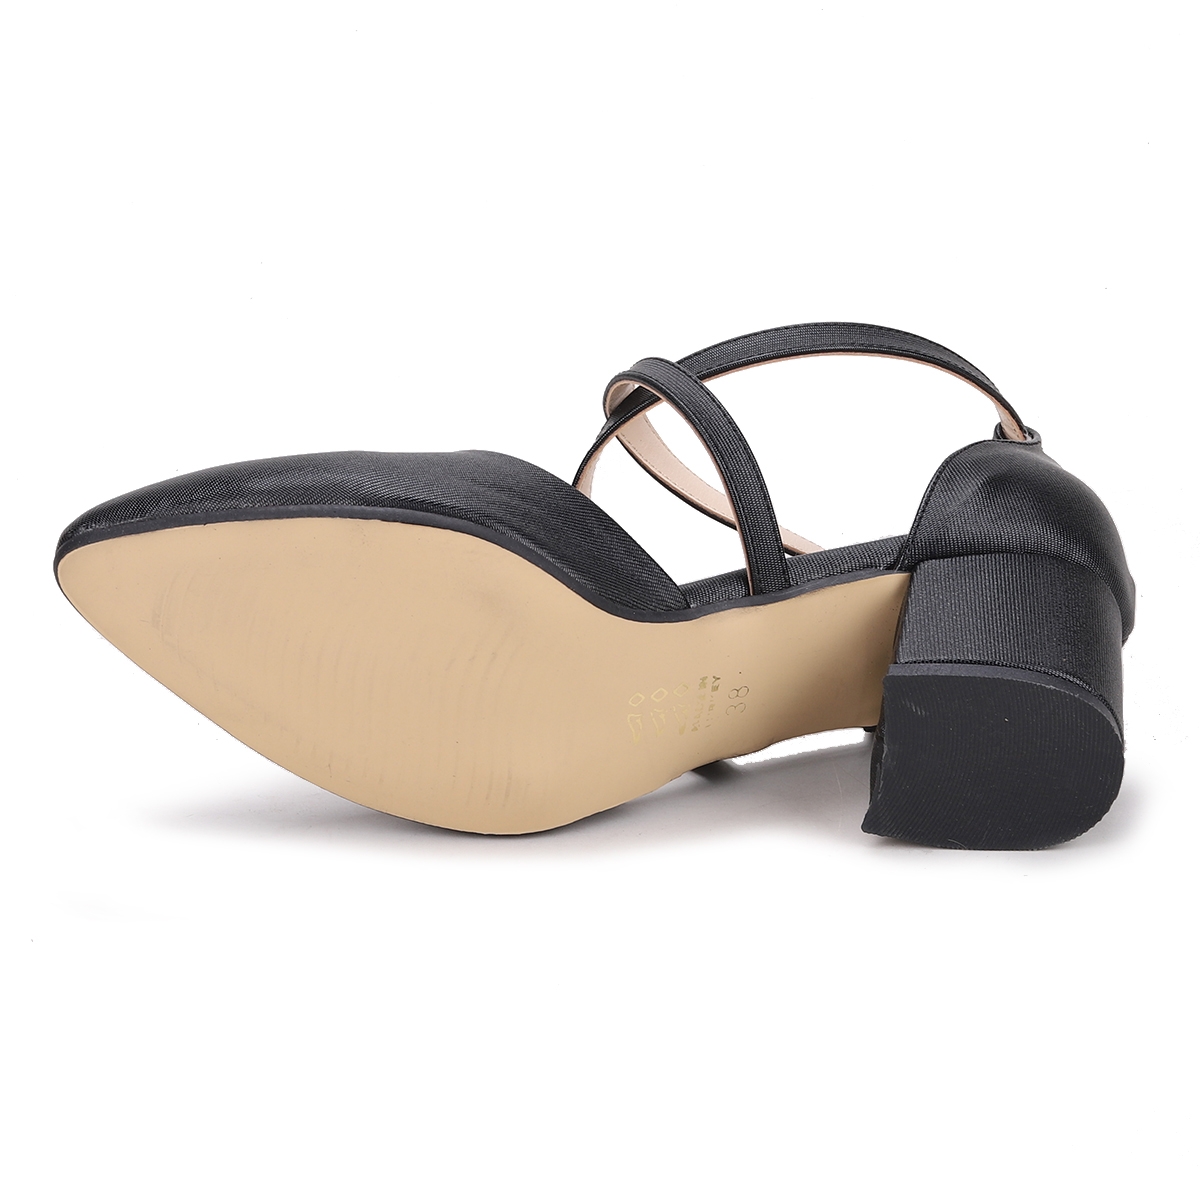 Flo Tier 1990.120 Parlak 5 Cm Topuk Kadın Sandalet Ayakkabı Siyah. 6